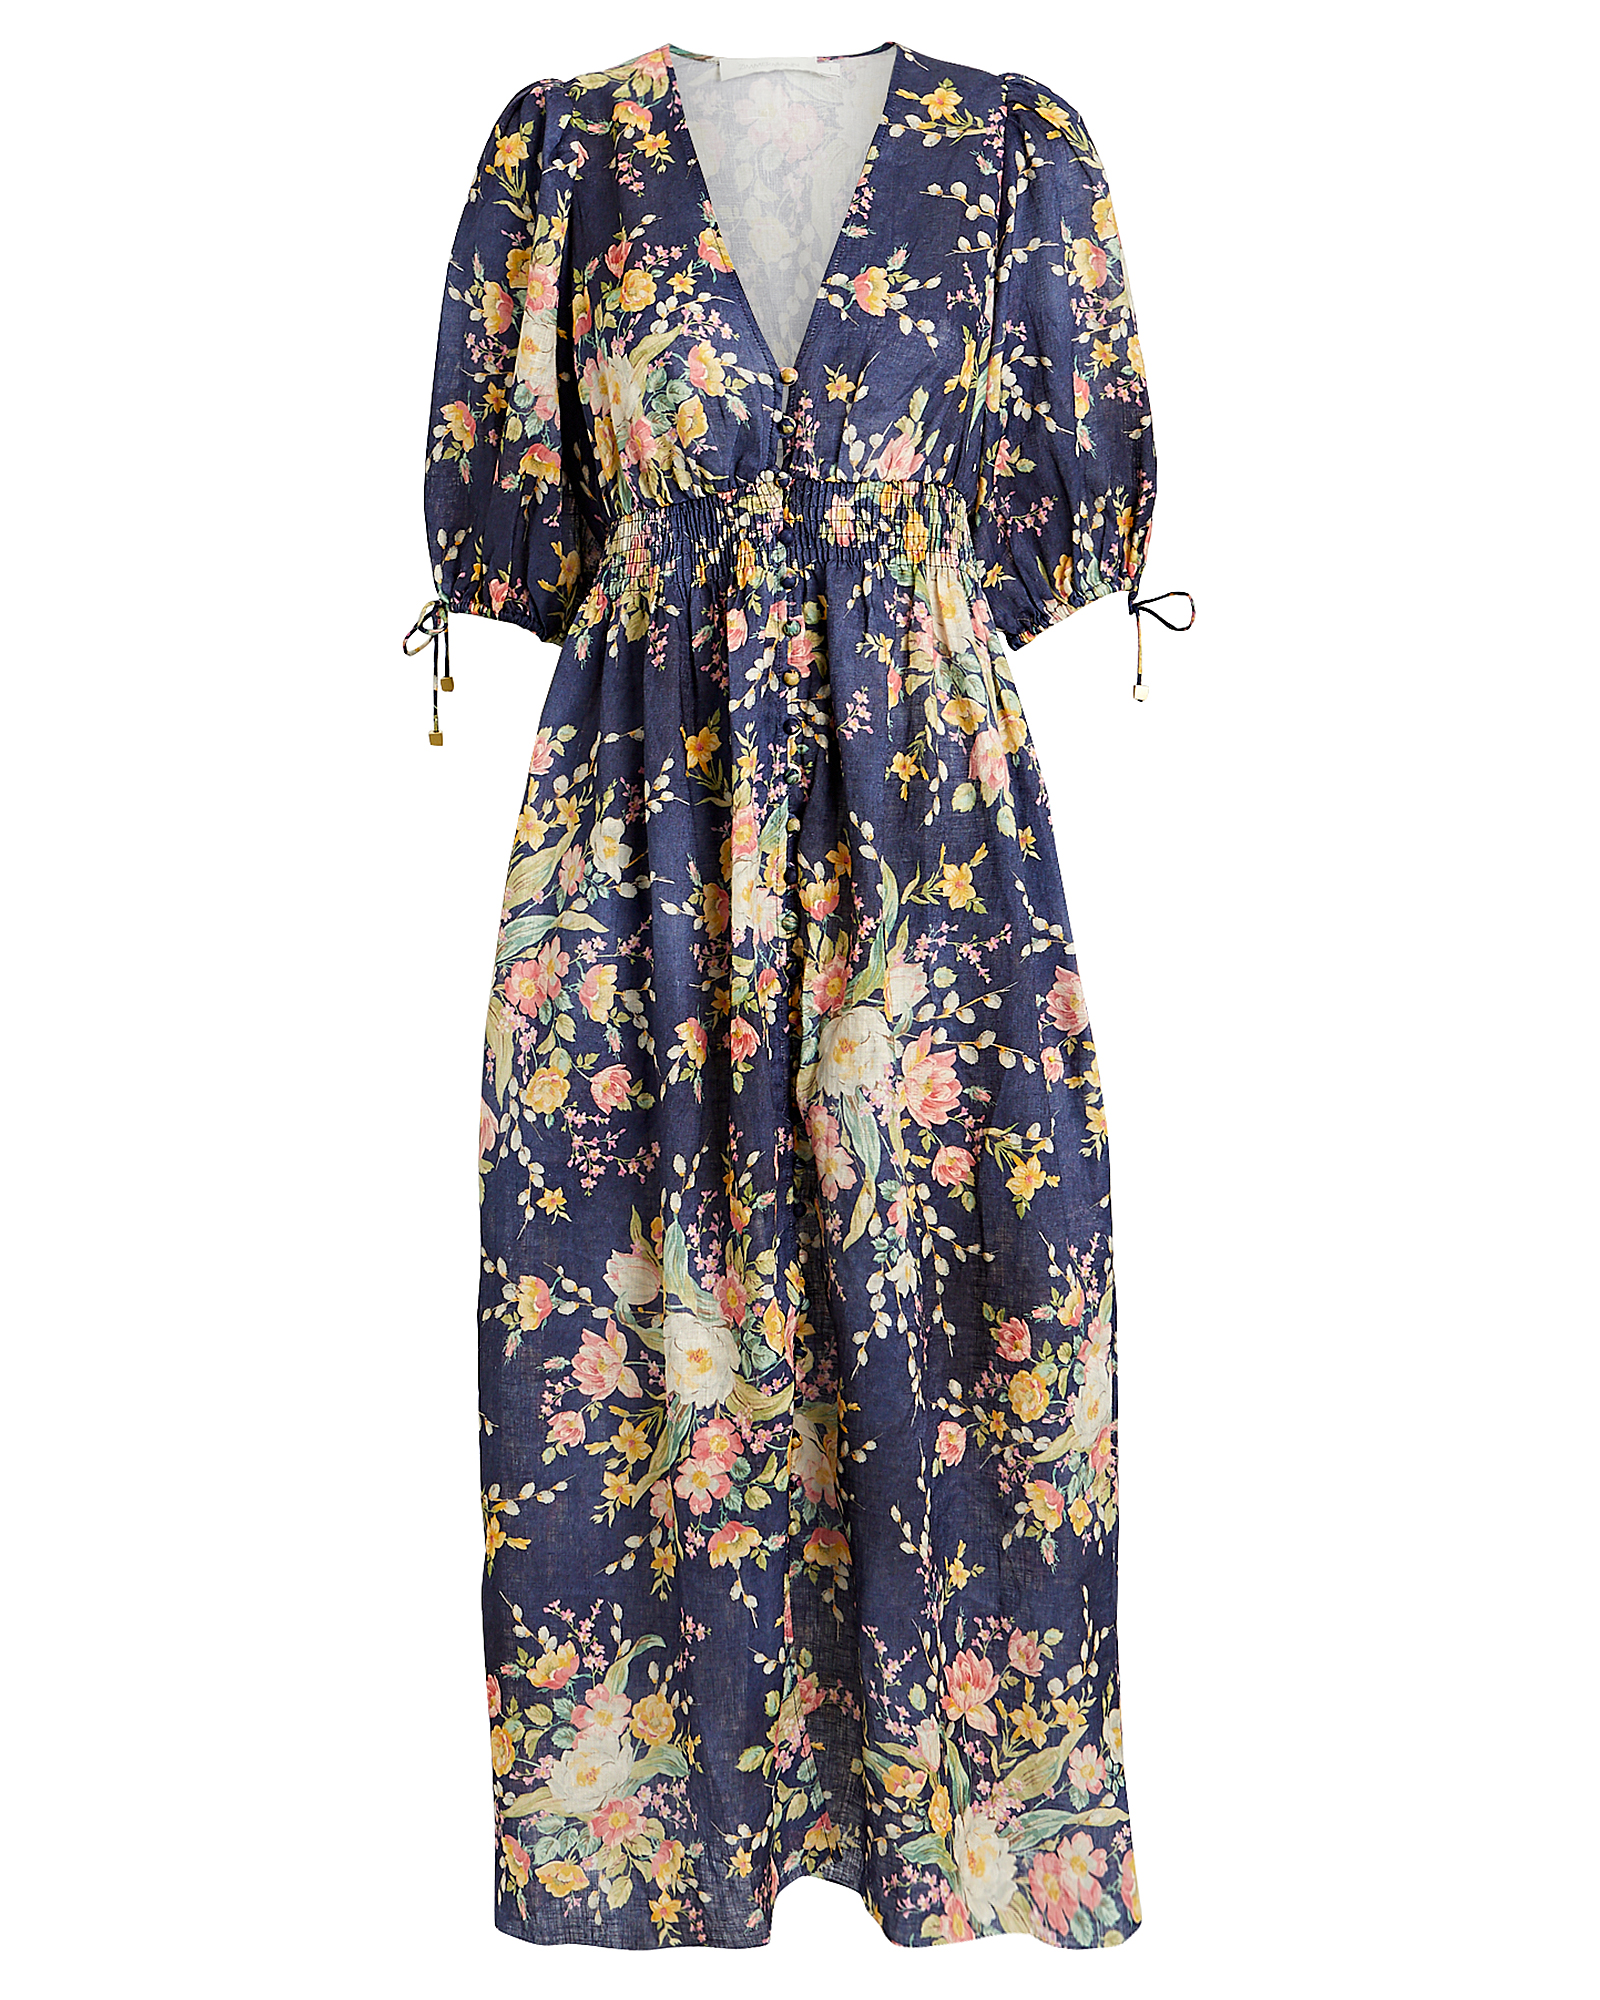 Zimmermann | Zinnia Shirred Floral Linen Dress | INTERMIX®